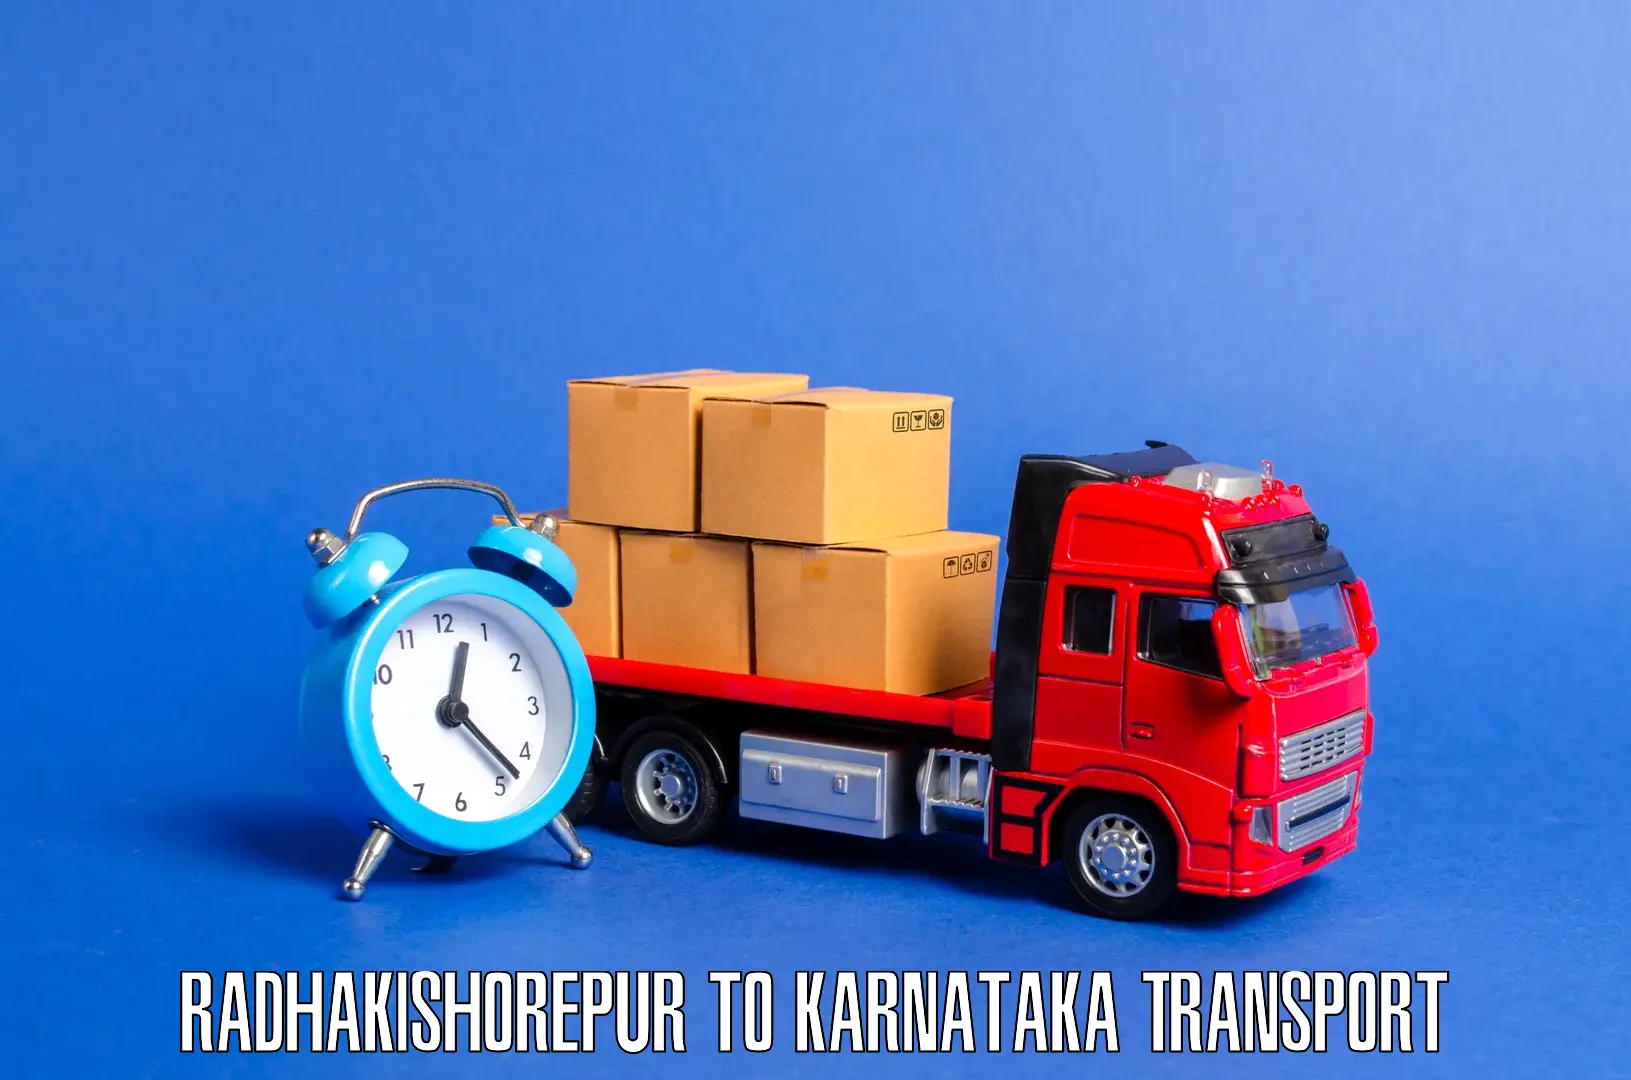 Furniture transport service Radhakishorepur to Kulshekar